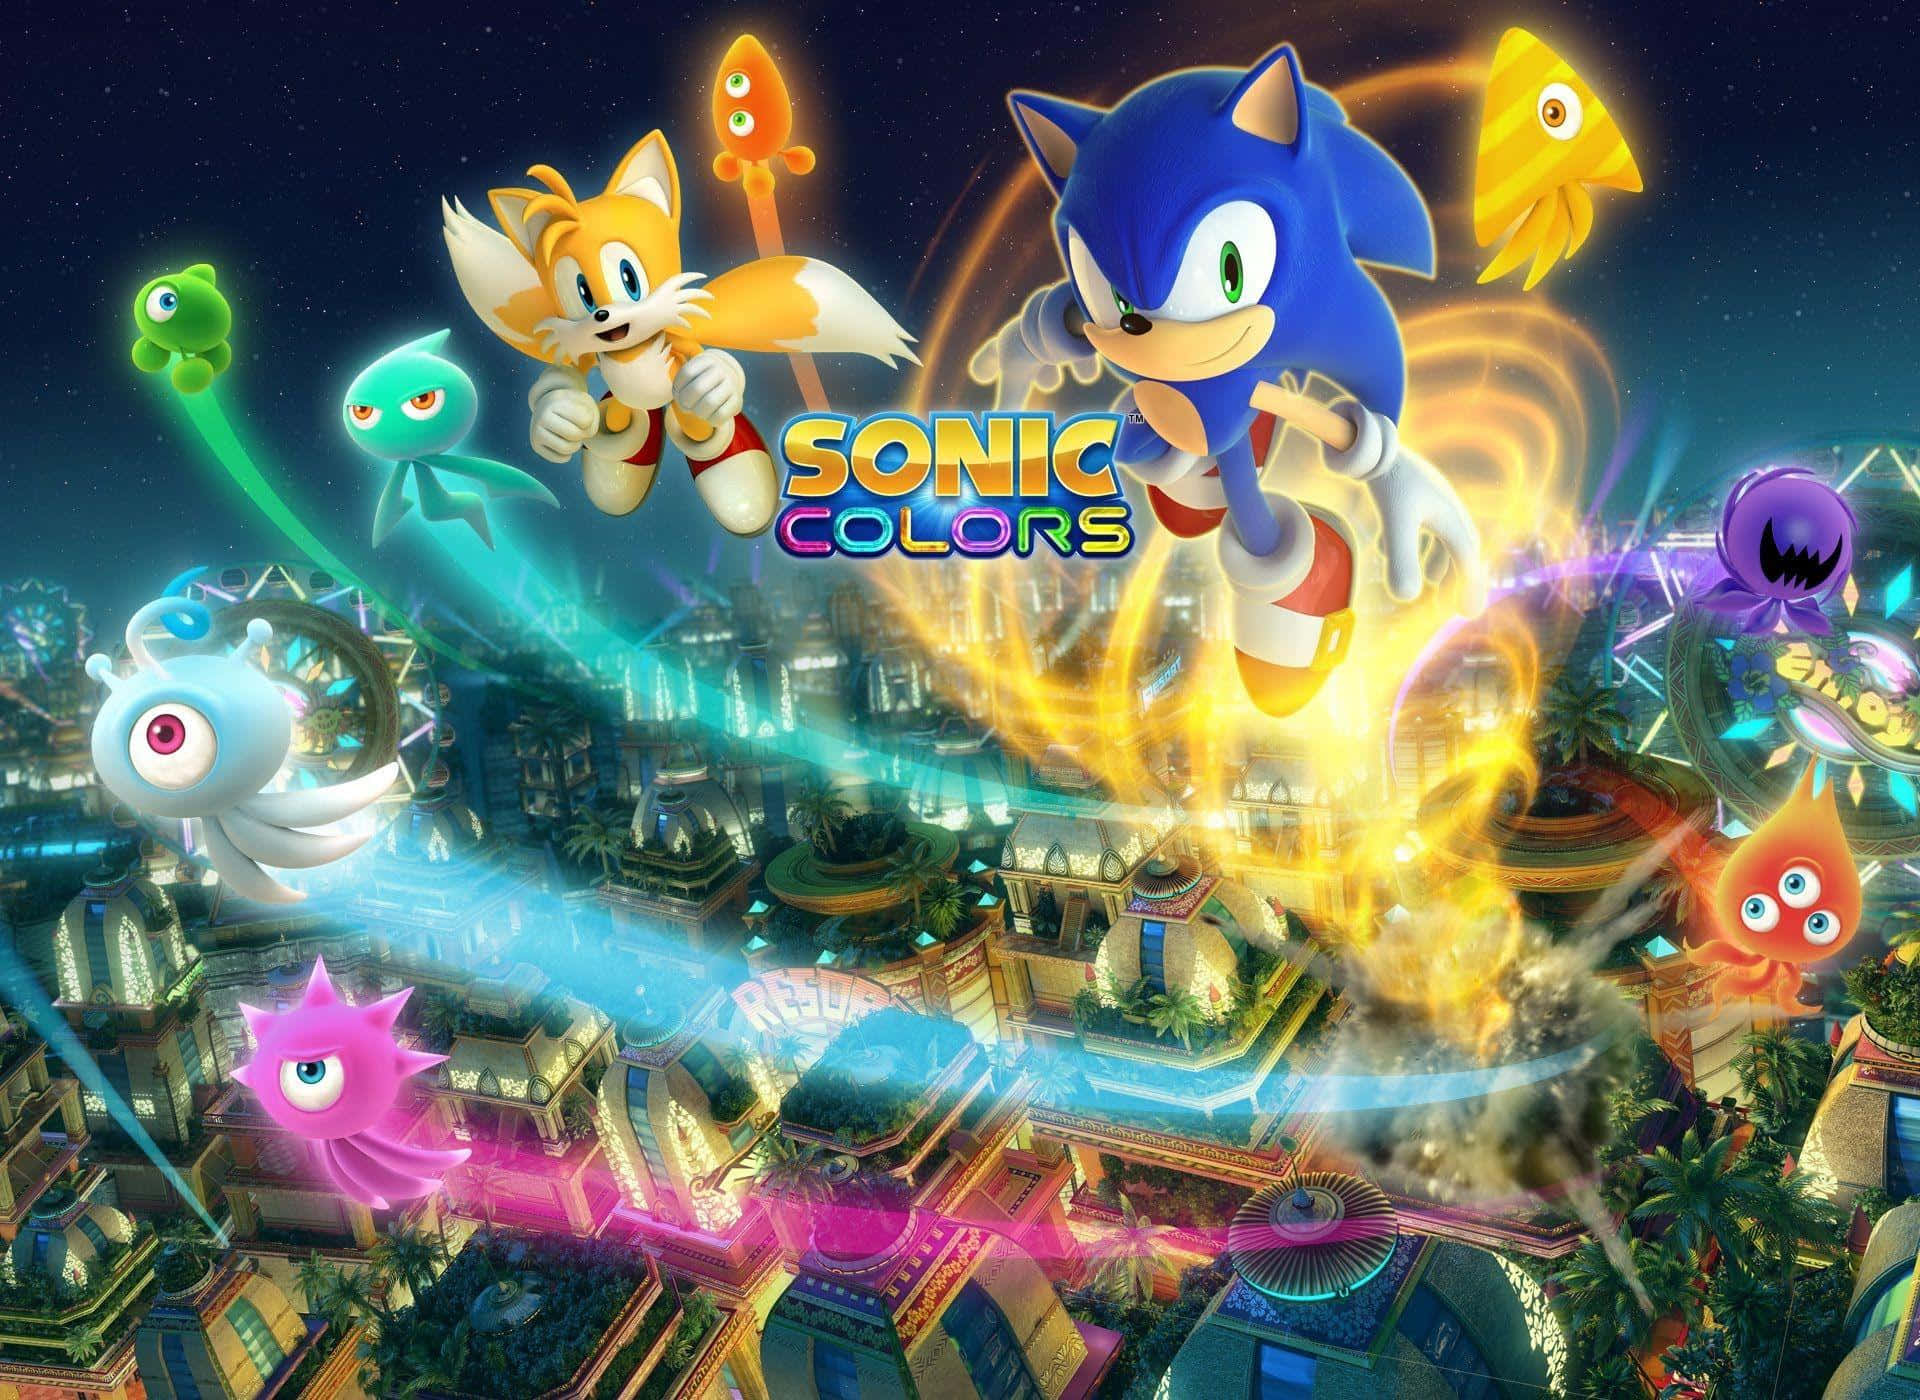 Iniziala Tua Avventura Con Il Classico Sonic The Hedgehog In 4k! Sfondo